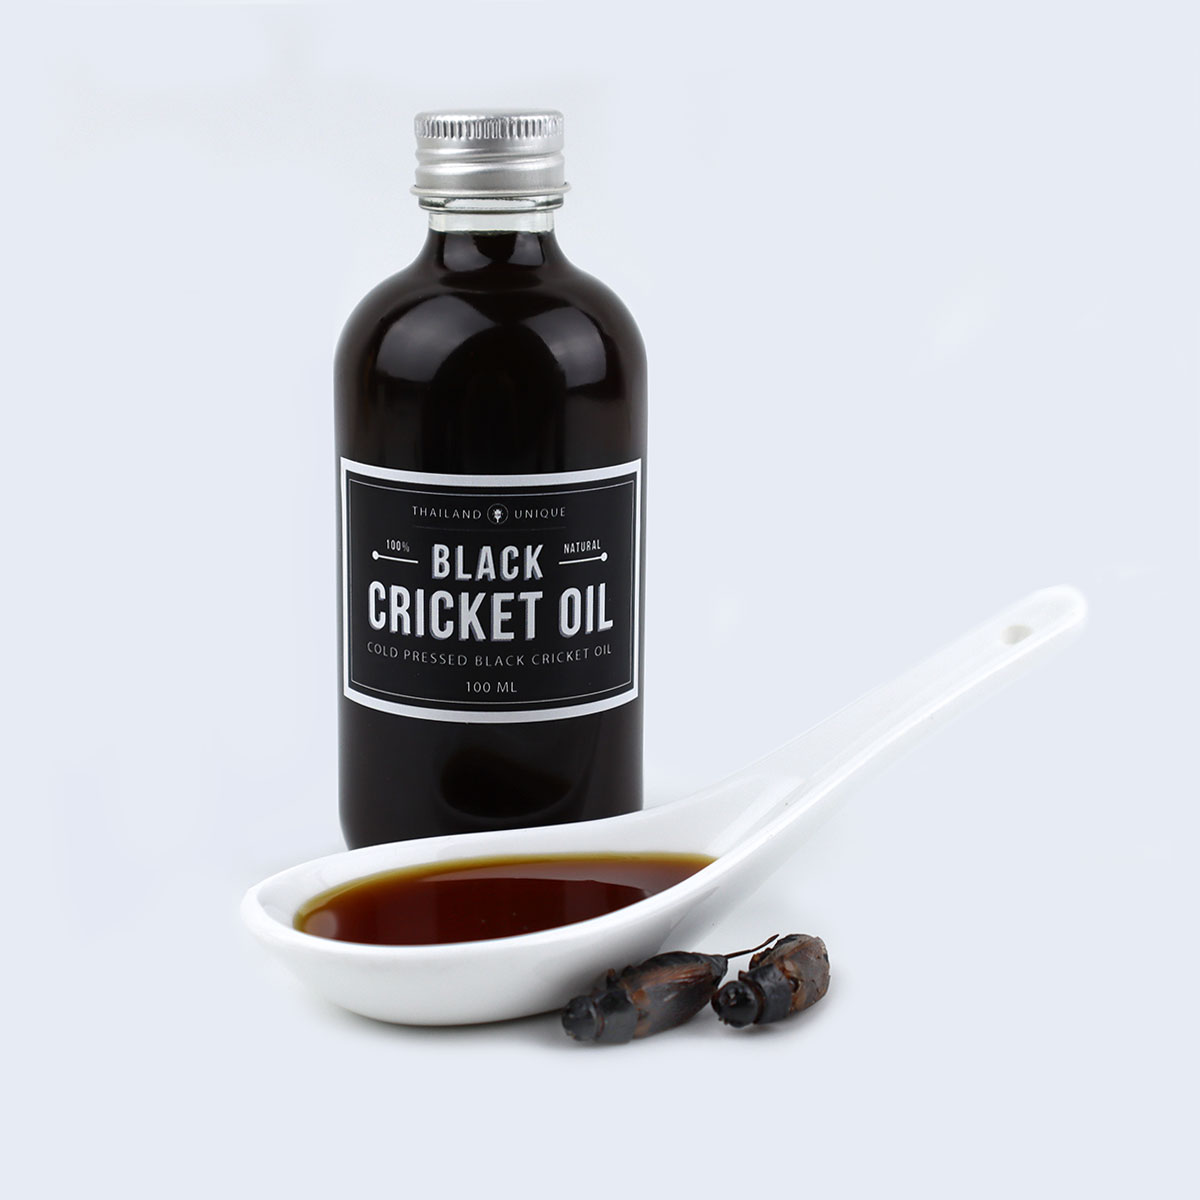 Black Cricket Oil Bottle Sample